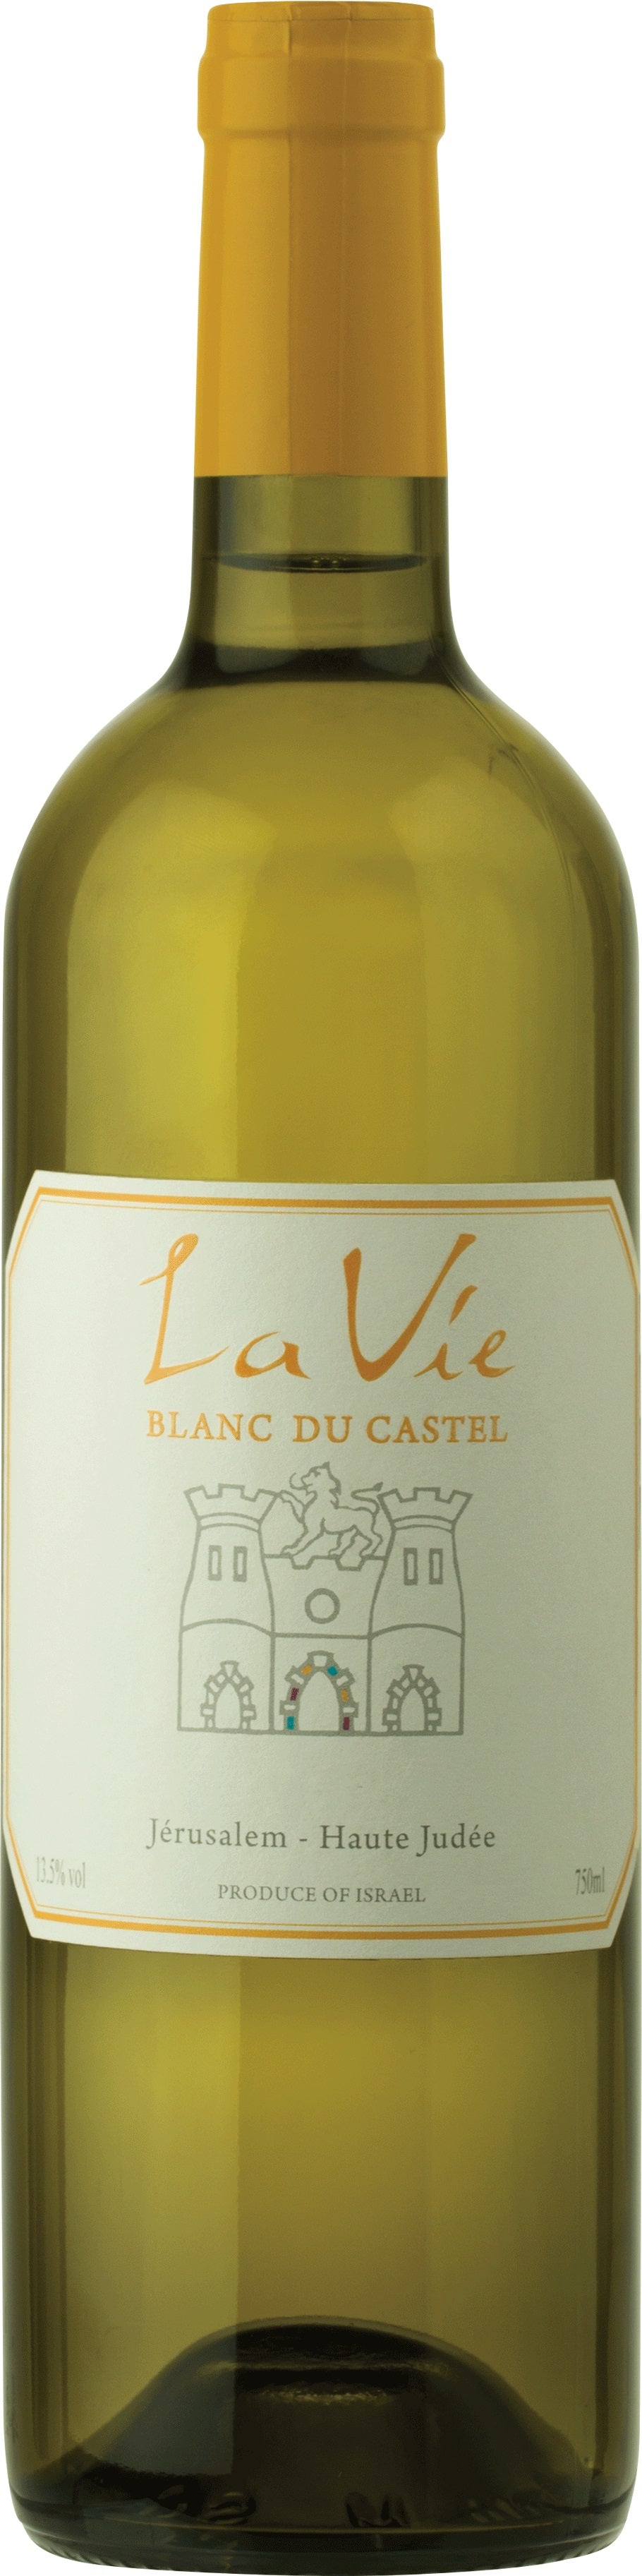 Domaine du Castel La Vie Blanc du Castel 2019